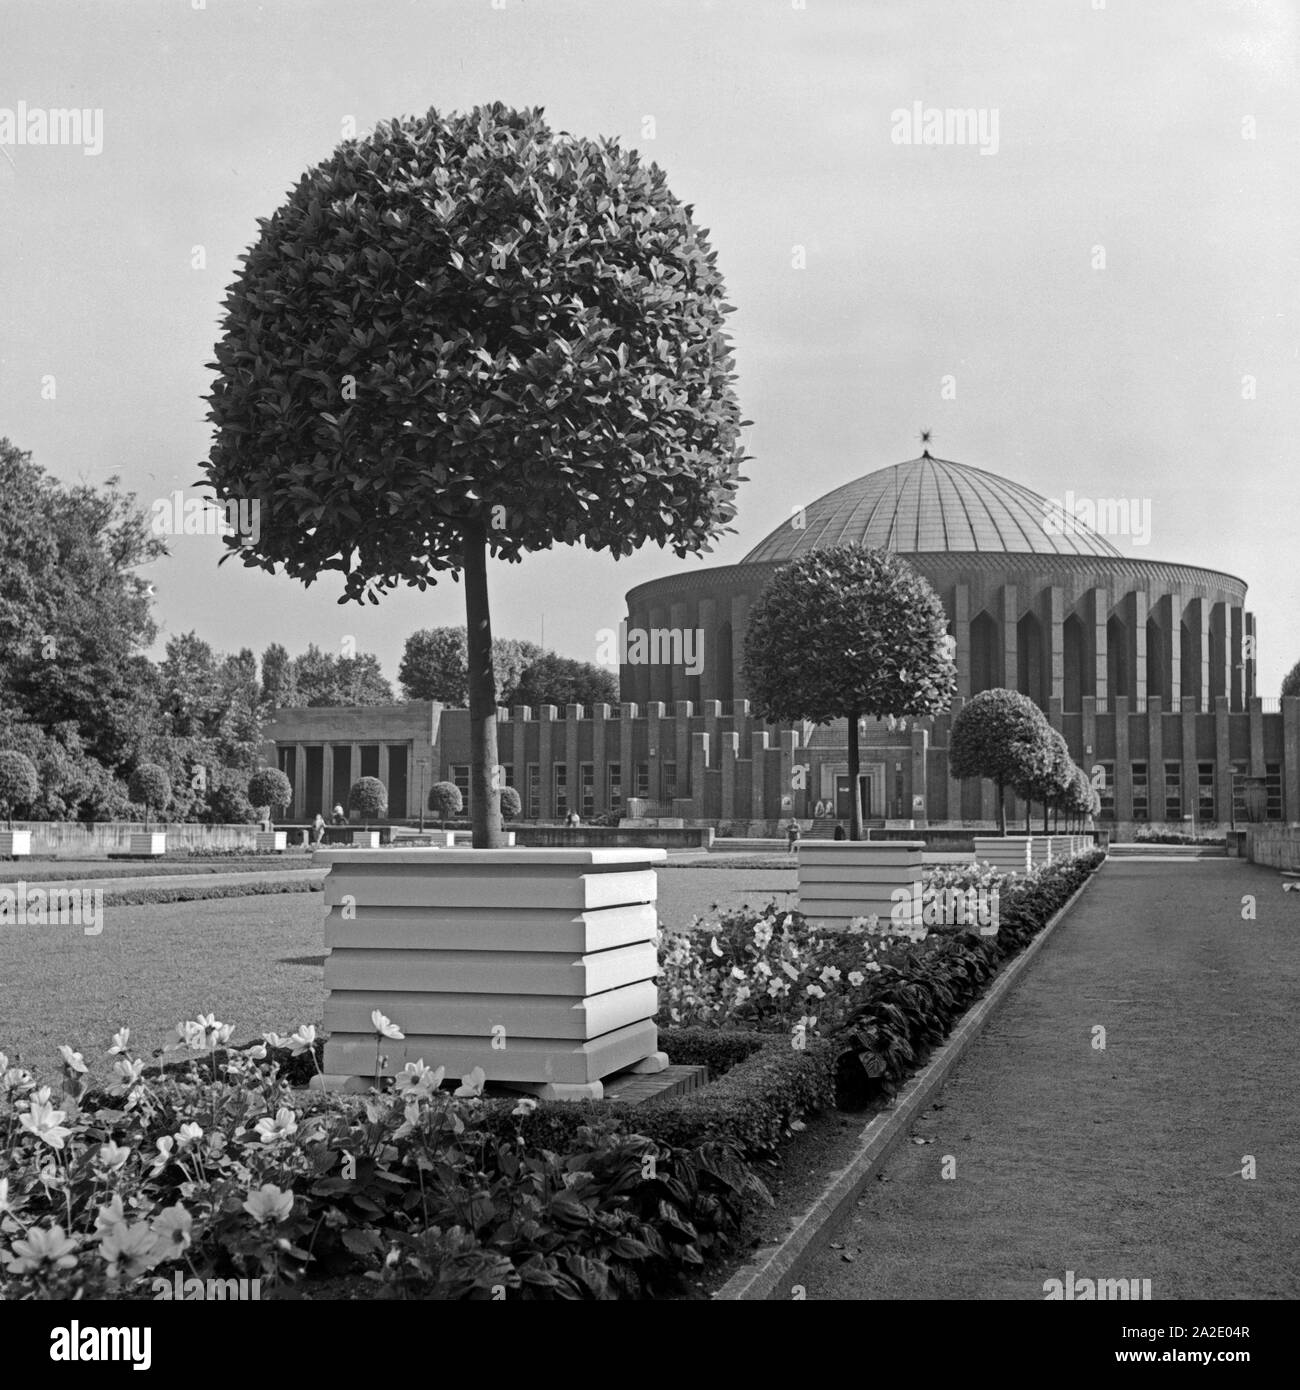 Das Planetarium in Düsseldorf, Deutschland 1930er Jahre. Duesseldorf planetarium, Germany 1930s. Stock Photo